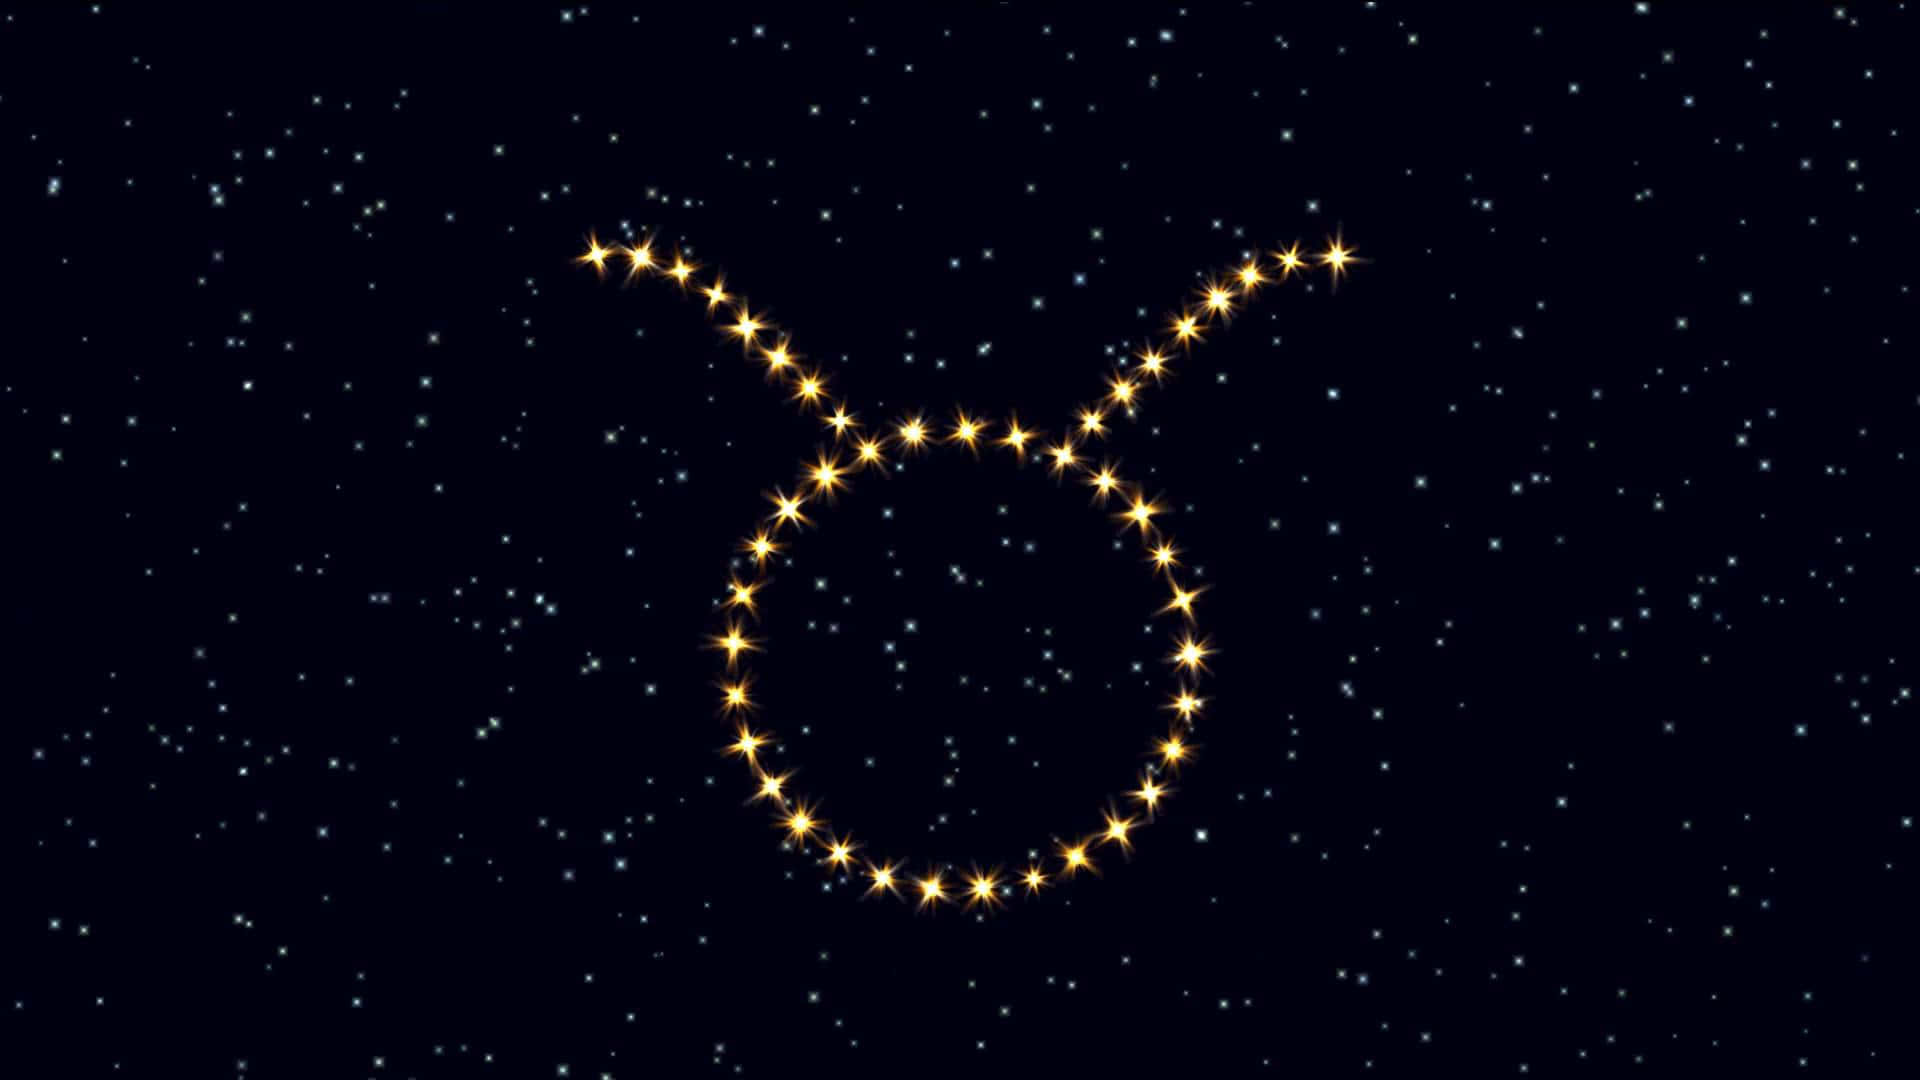 Umsigno Do Zodíaco É Mostrado No Céu Noturno.